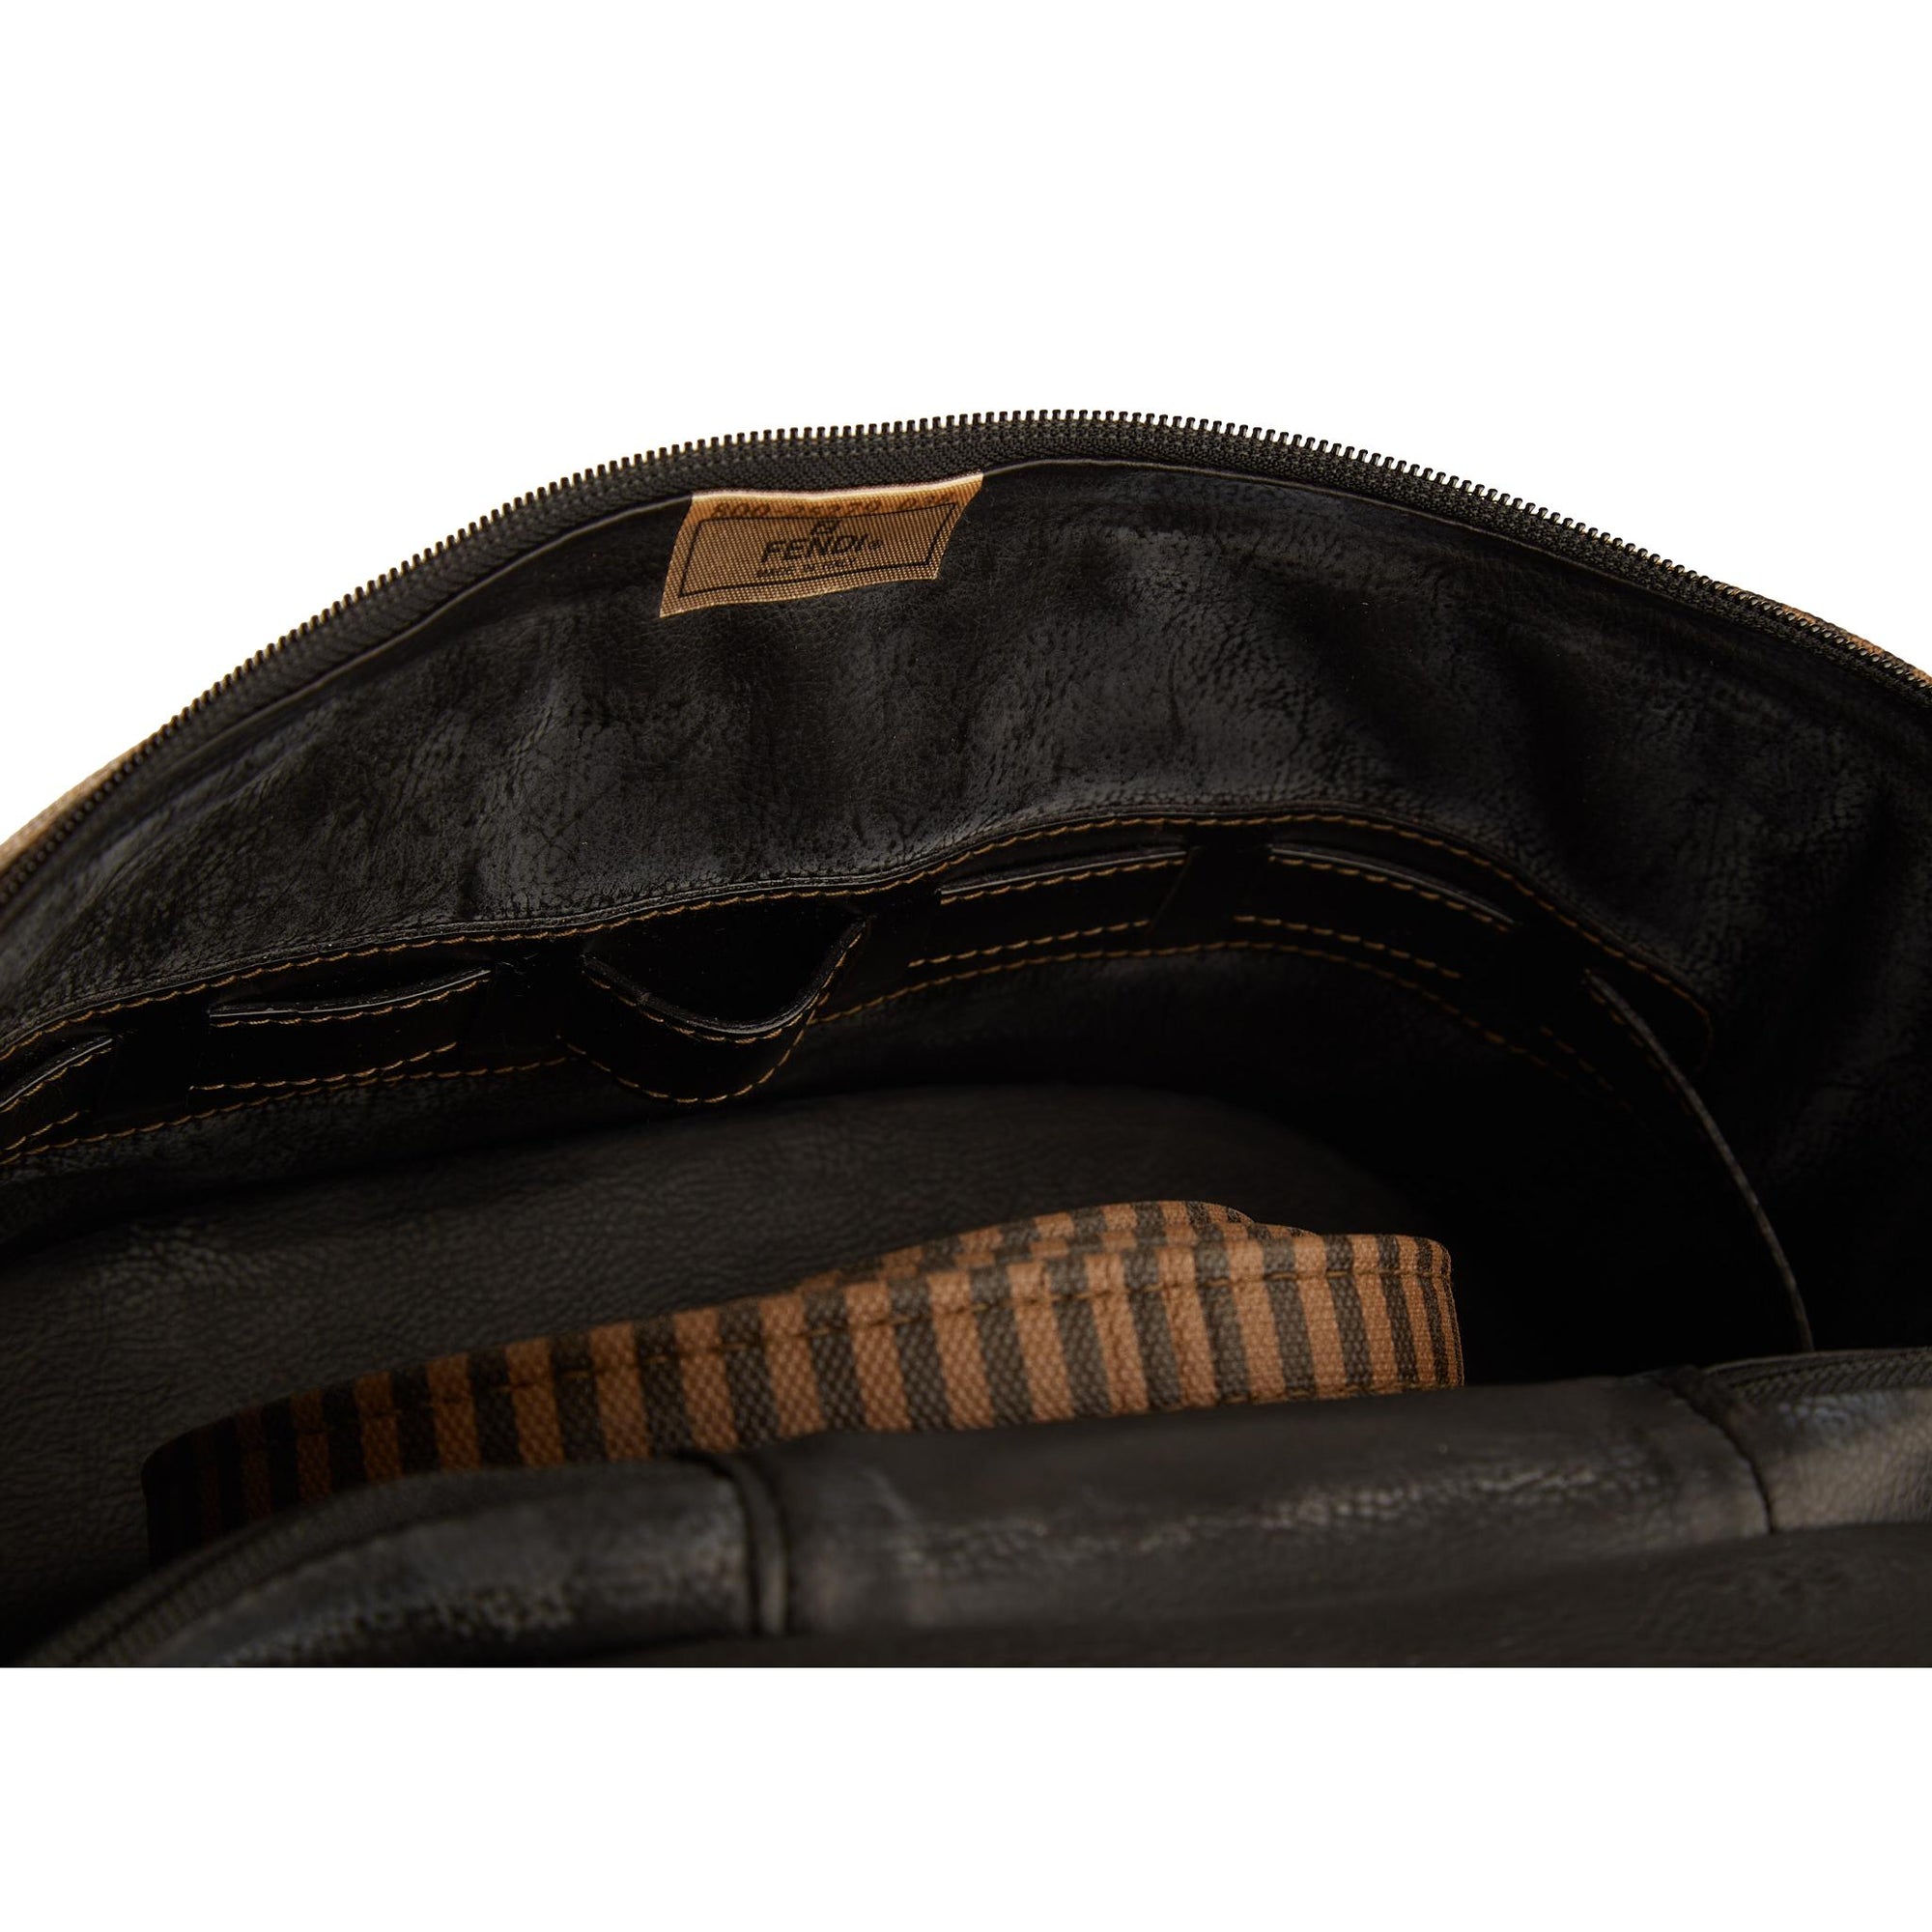 Fendi Brown Striped 2-Way Vanity Bag